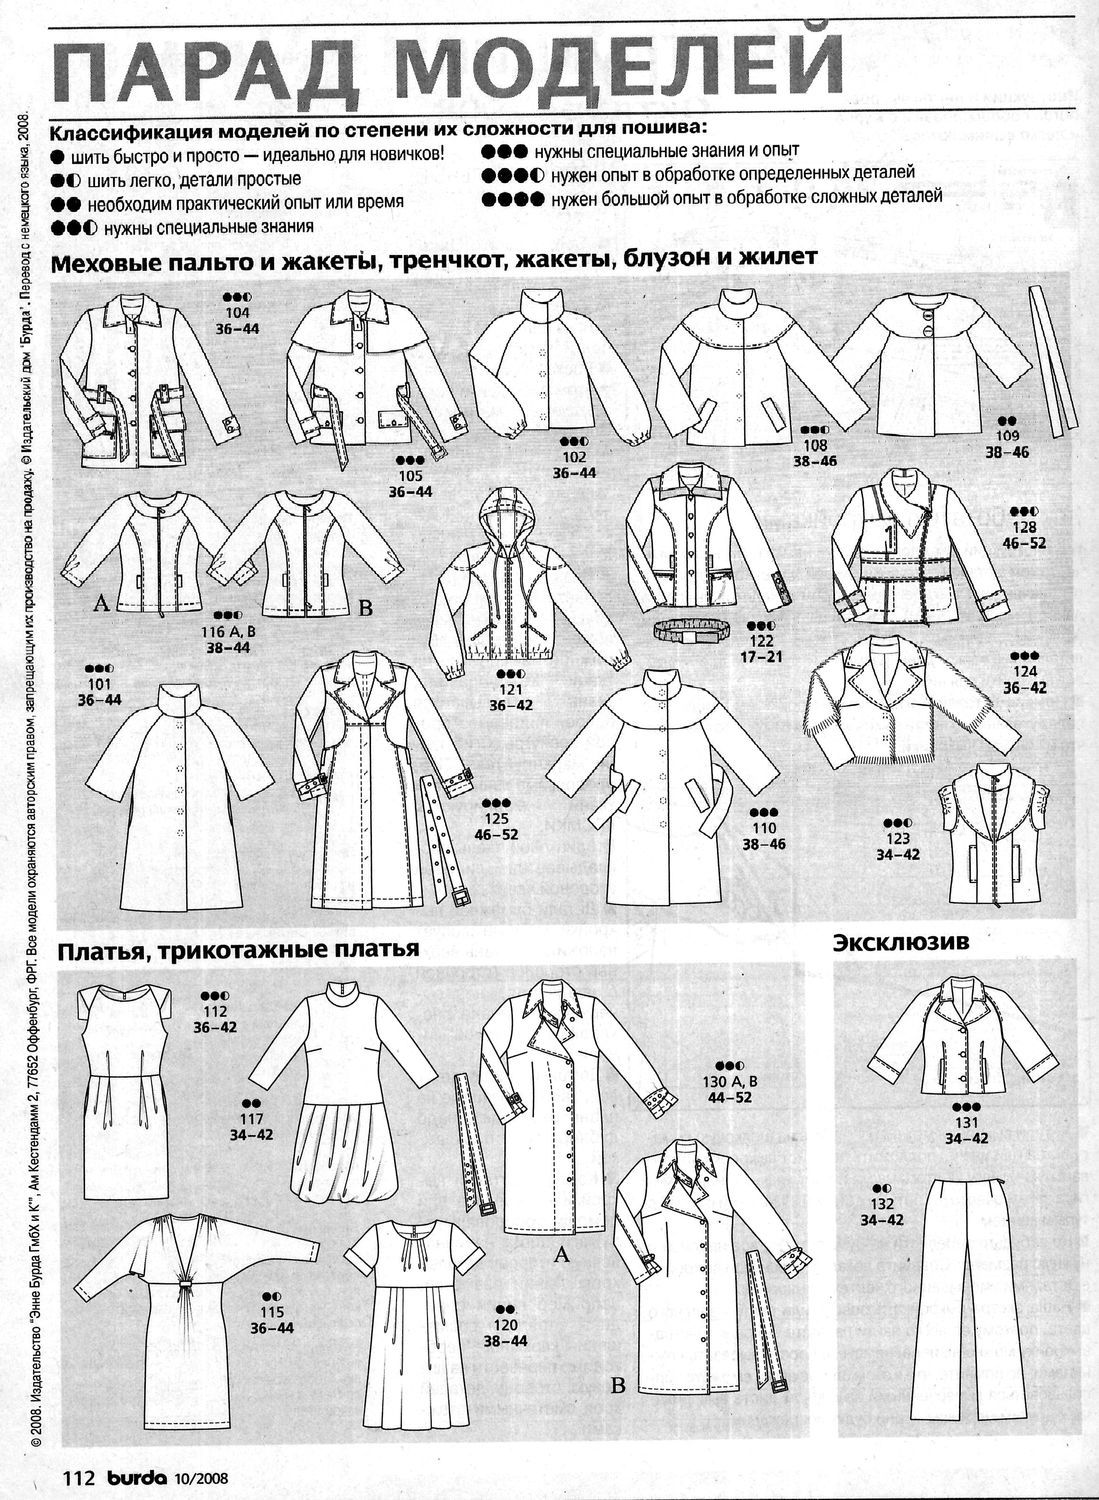 Сшить мужское пальто. как сшить мужское пальто своими руками? выкройки и описание моделей